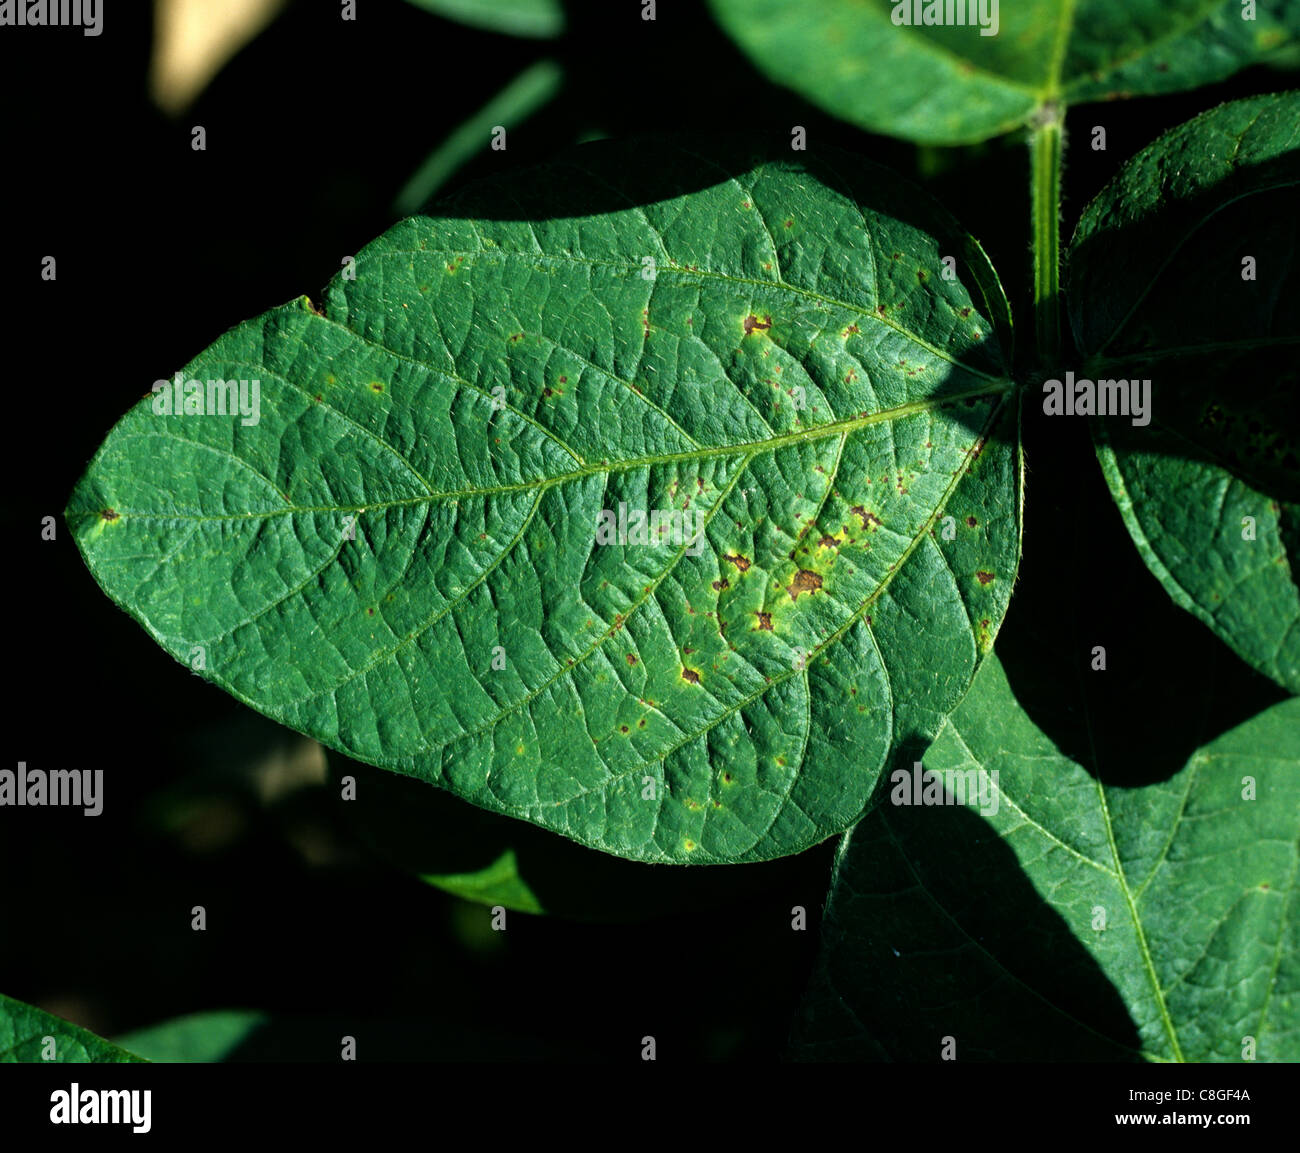 La quemadura bacteriana (Xanthomonas phaseoli) lesiones necróticas en hojas de soja Foto de stock